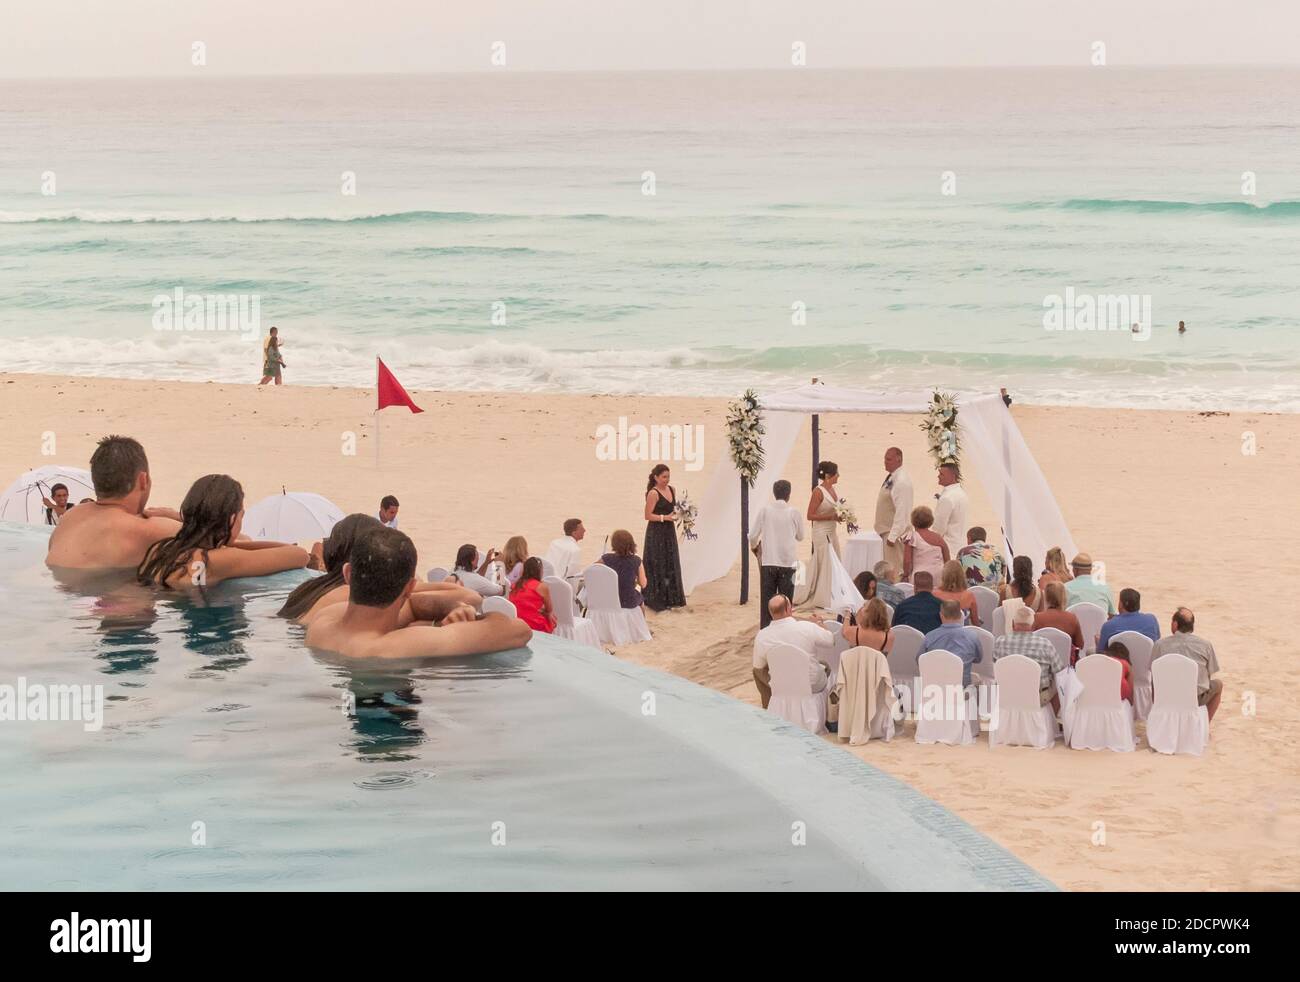 Les clients de l'hôtel observent un mariage sur la plage Banque D'Images